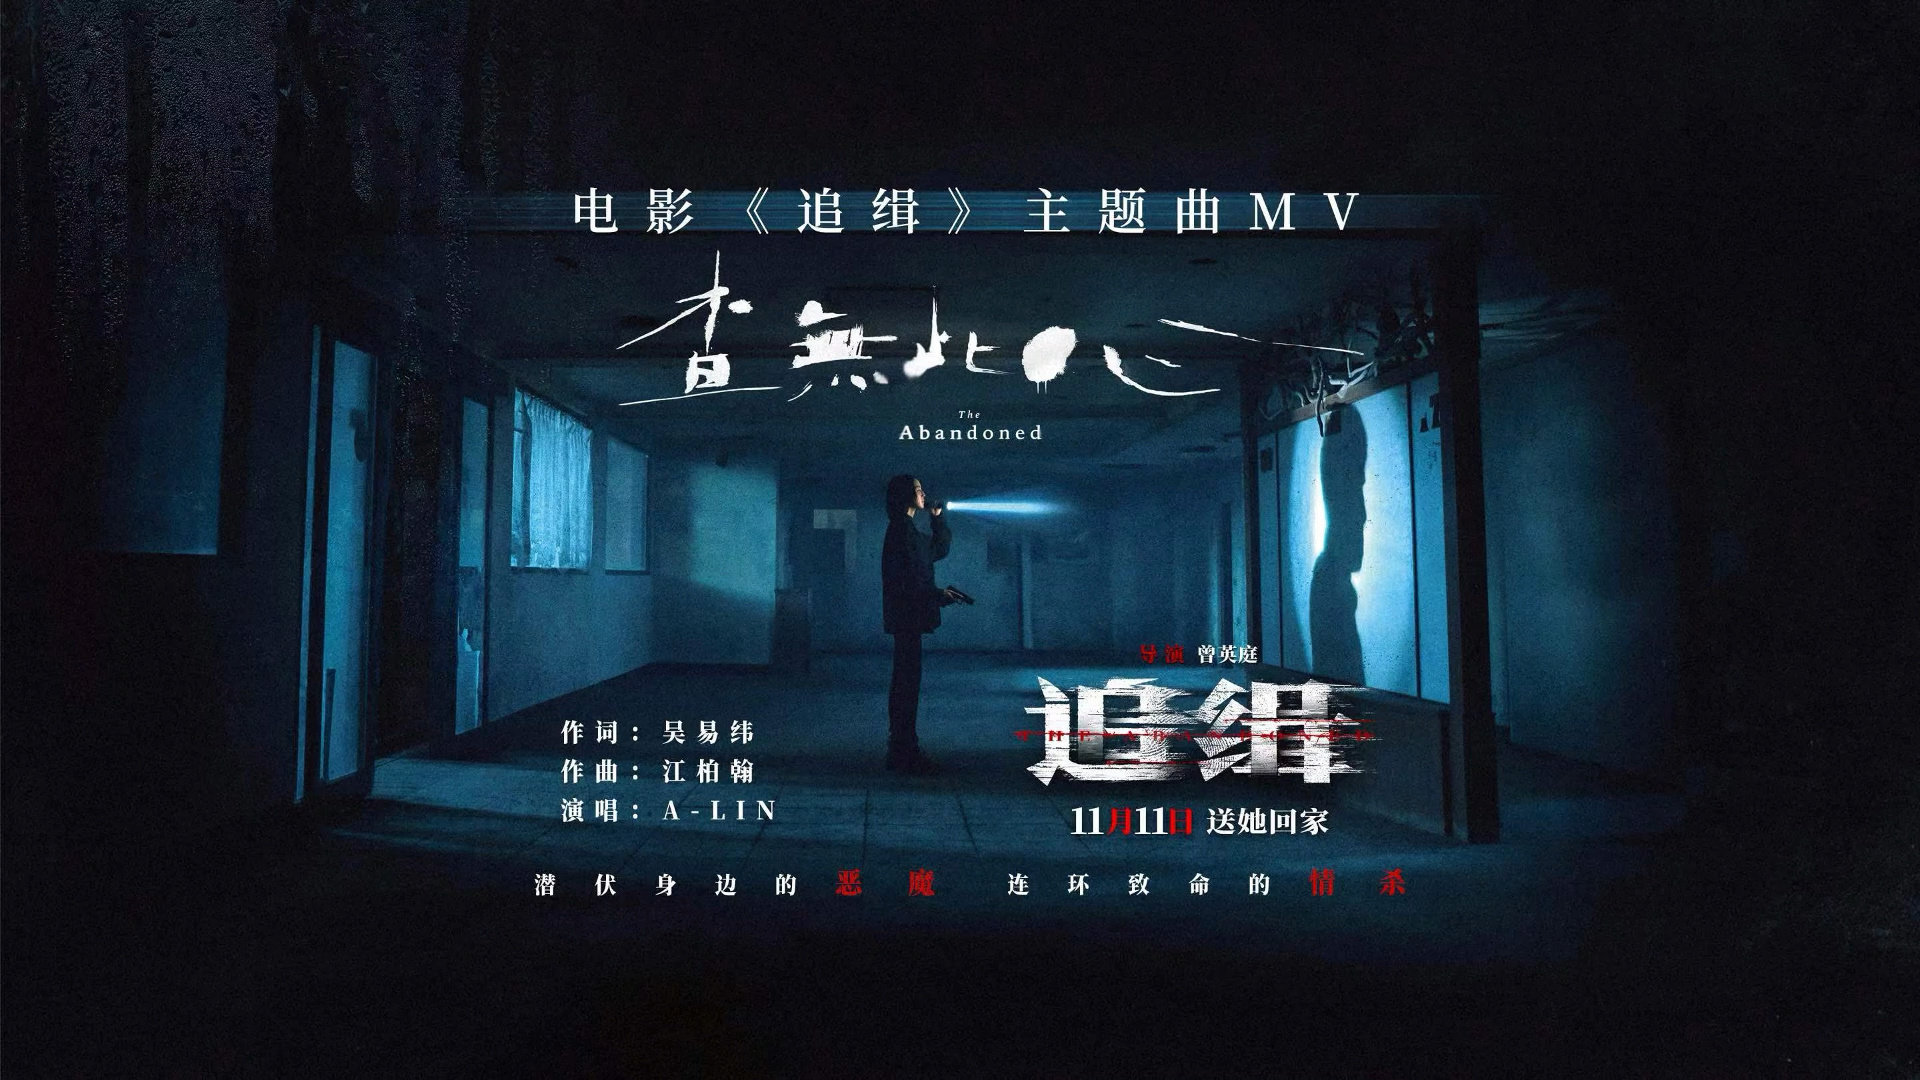 电影《追缉》发布了主题曲《查无此心》MV